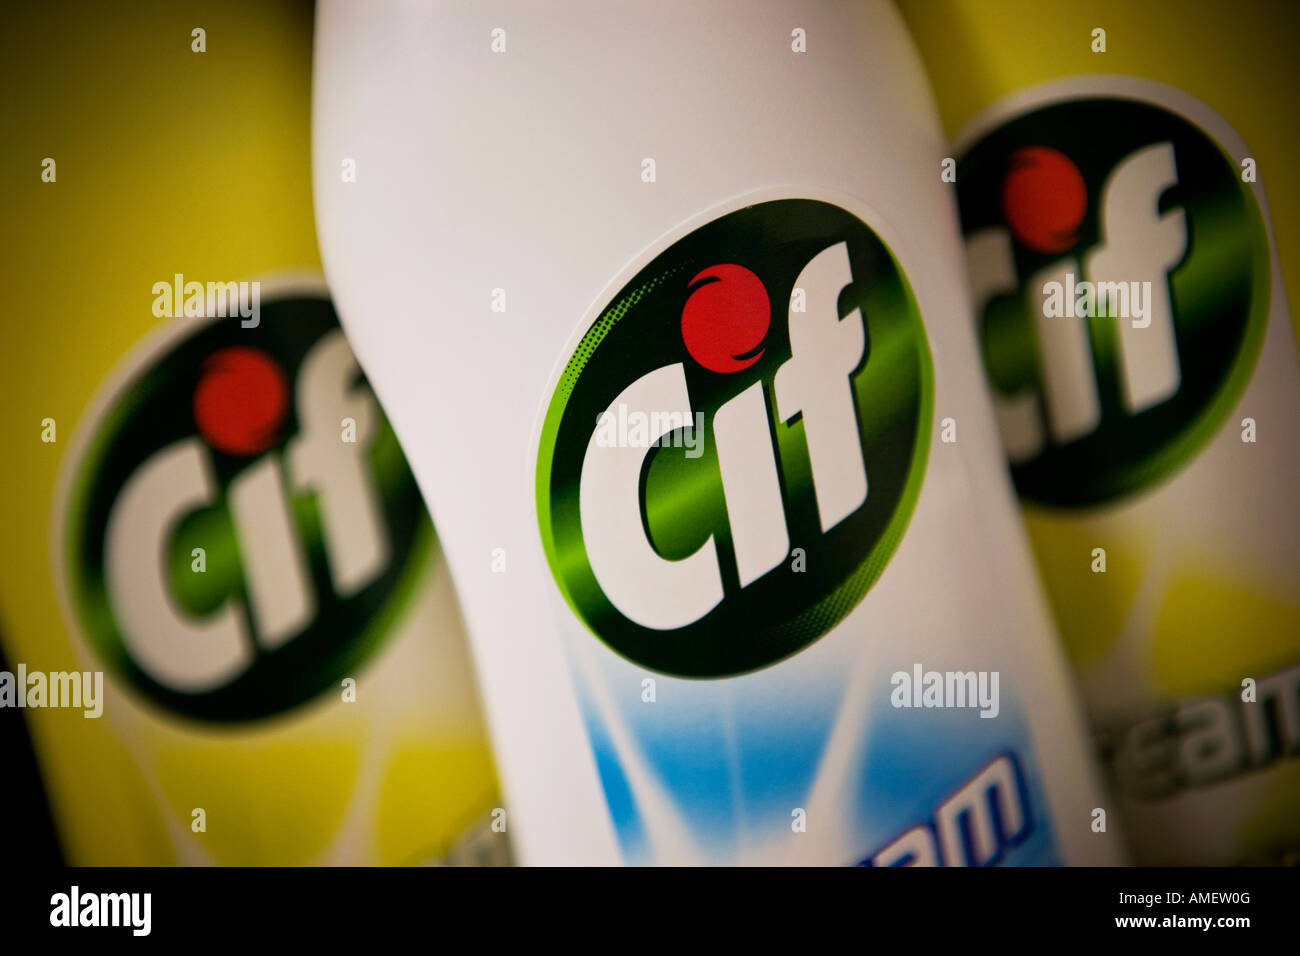 Limpieza cif crema cif es una marca de Unilever Fotografía de stock - Alamy